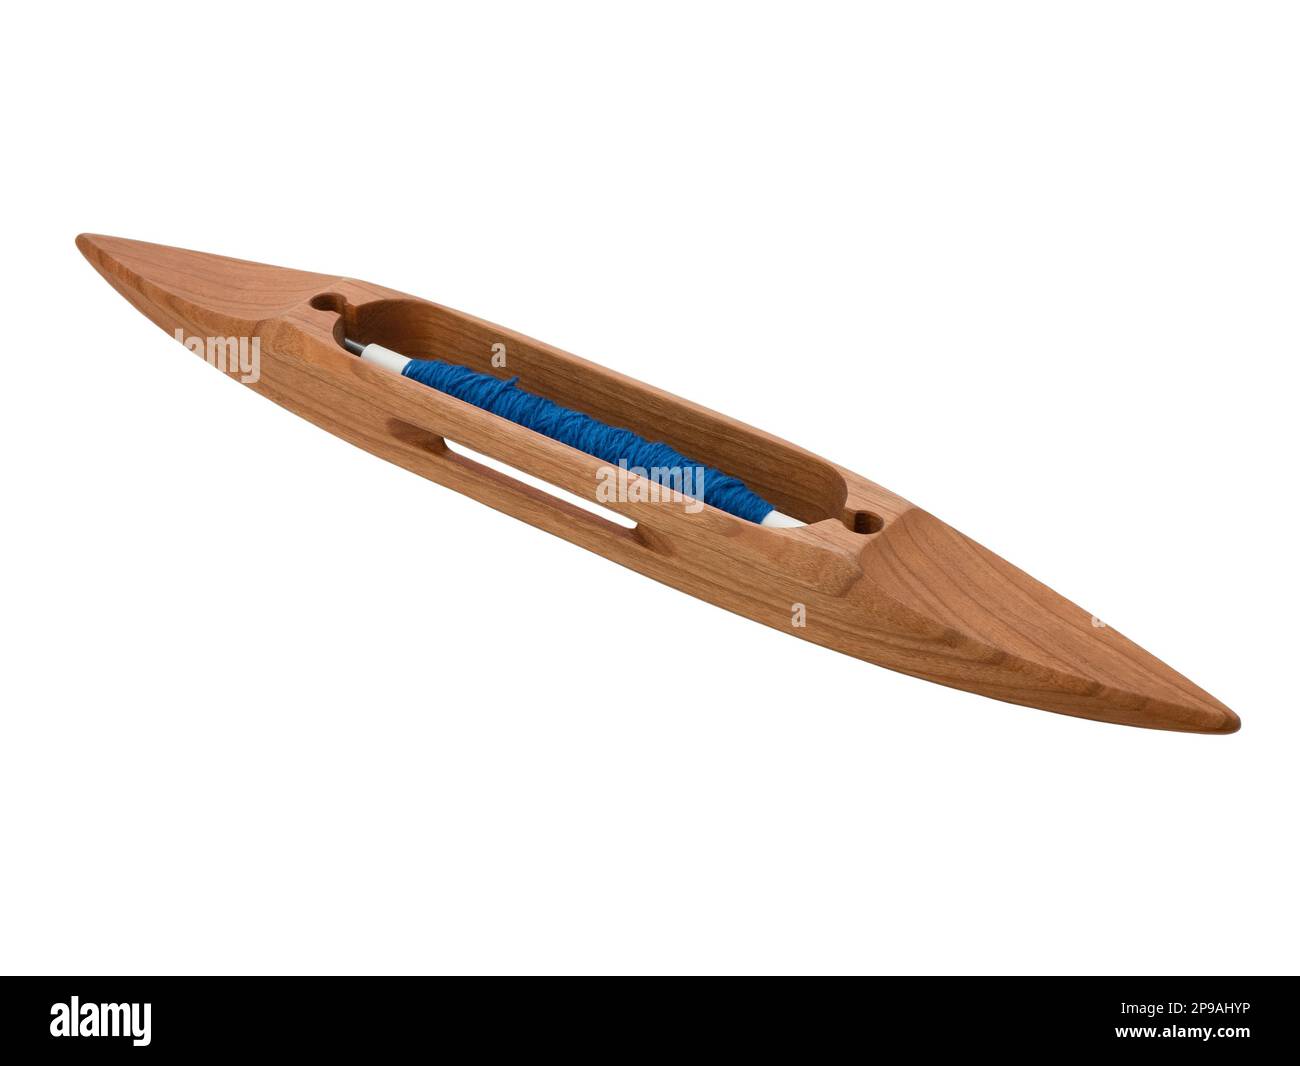 Navette de bateau avec fil bleu utilisé dans le tissage de métier à tisser, isolé. Navette en bois sur fond blanc Banque D'Images